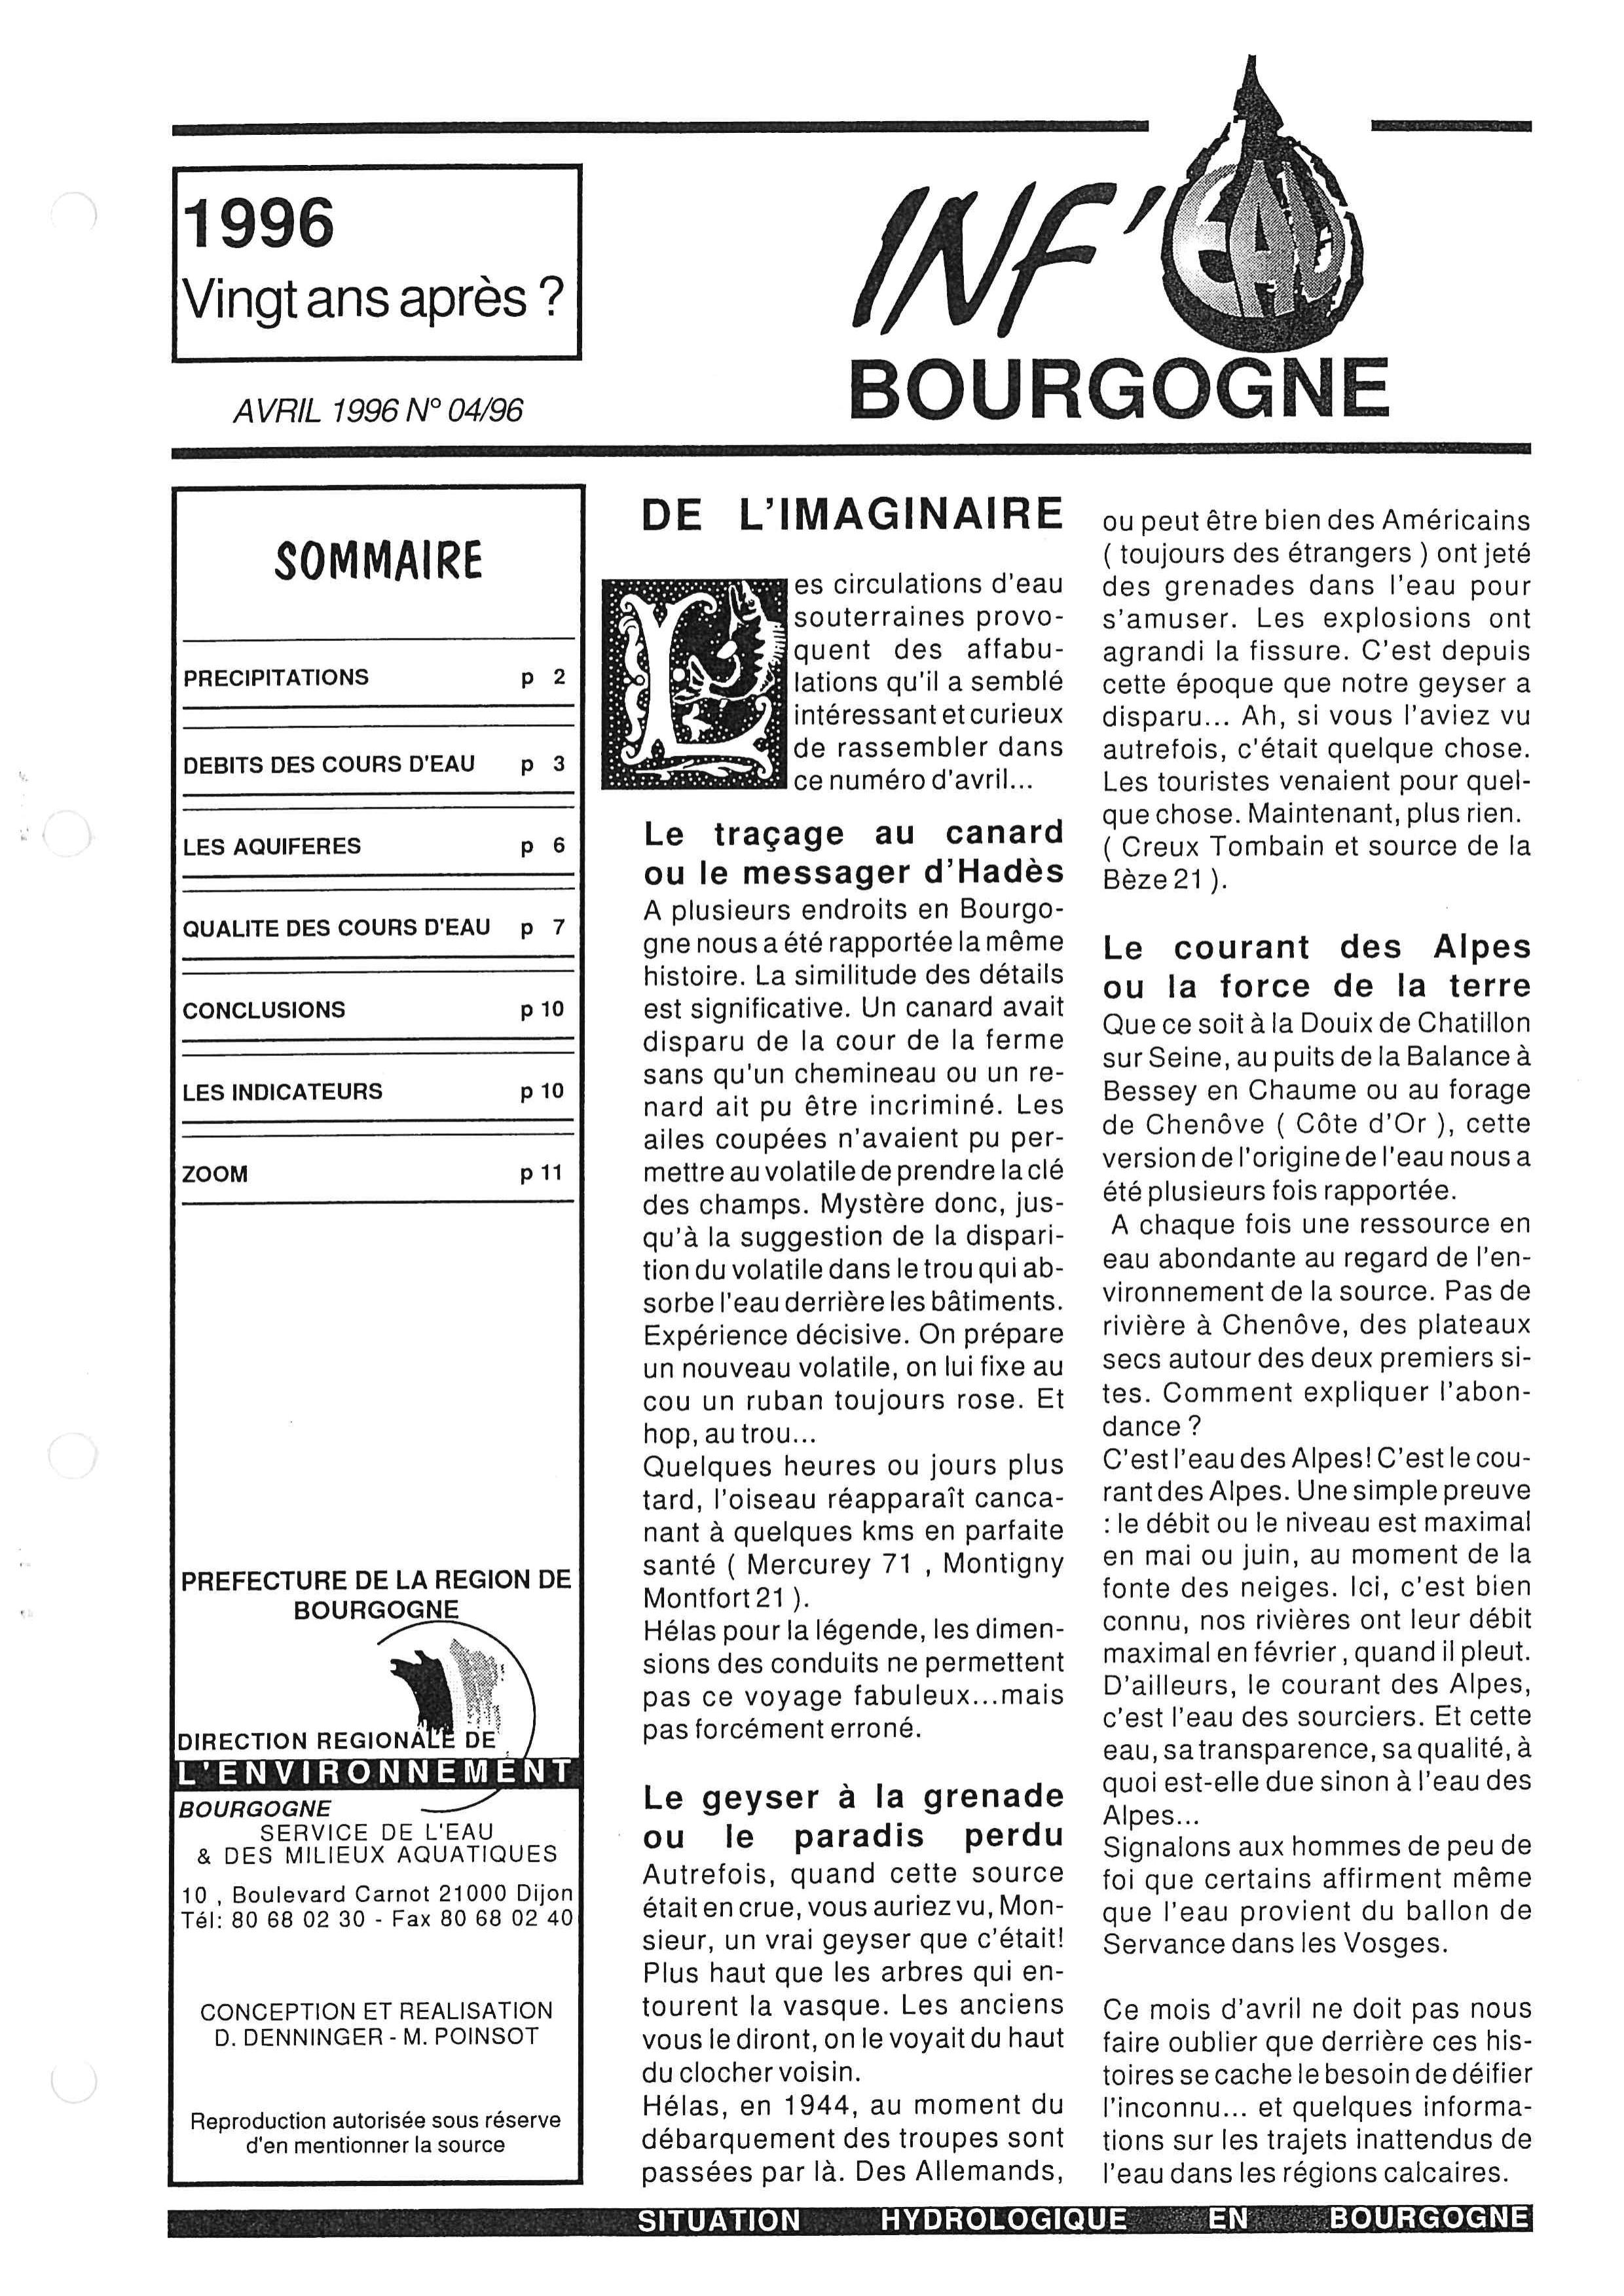 Bulletin hydrologique du mois de mars 1996